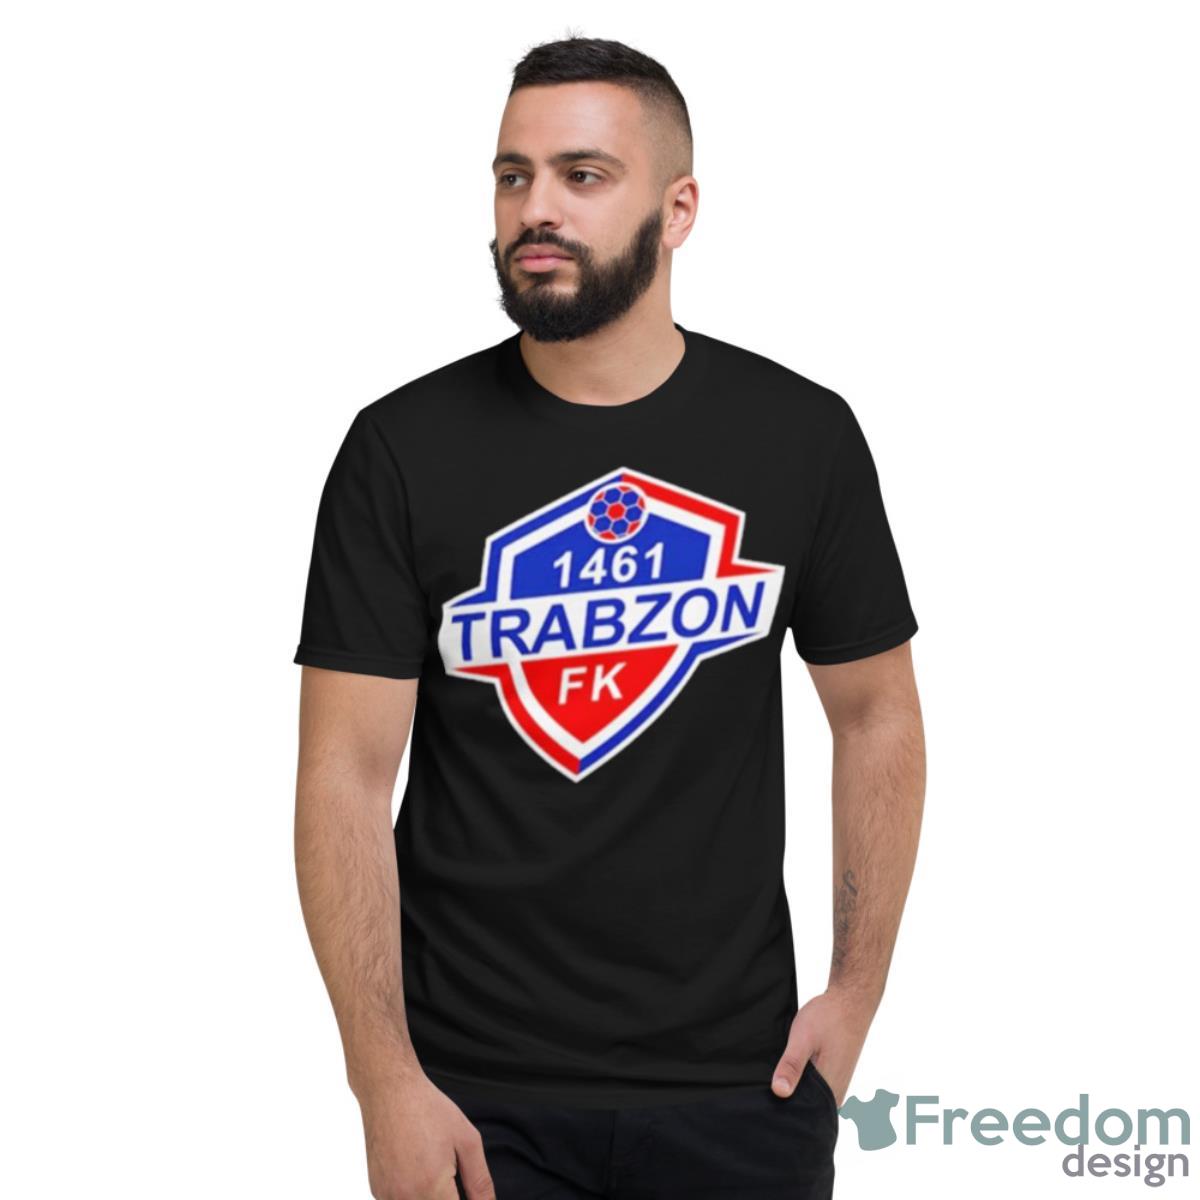 1461 Trabzon Fk Logo Shirt - Short Sleeve T-Shirt